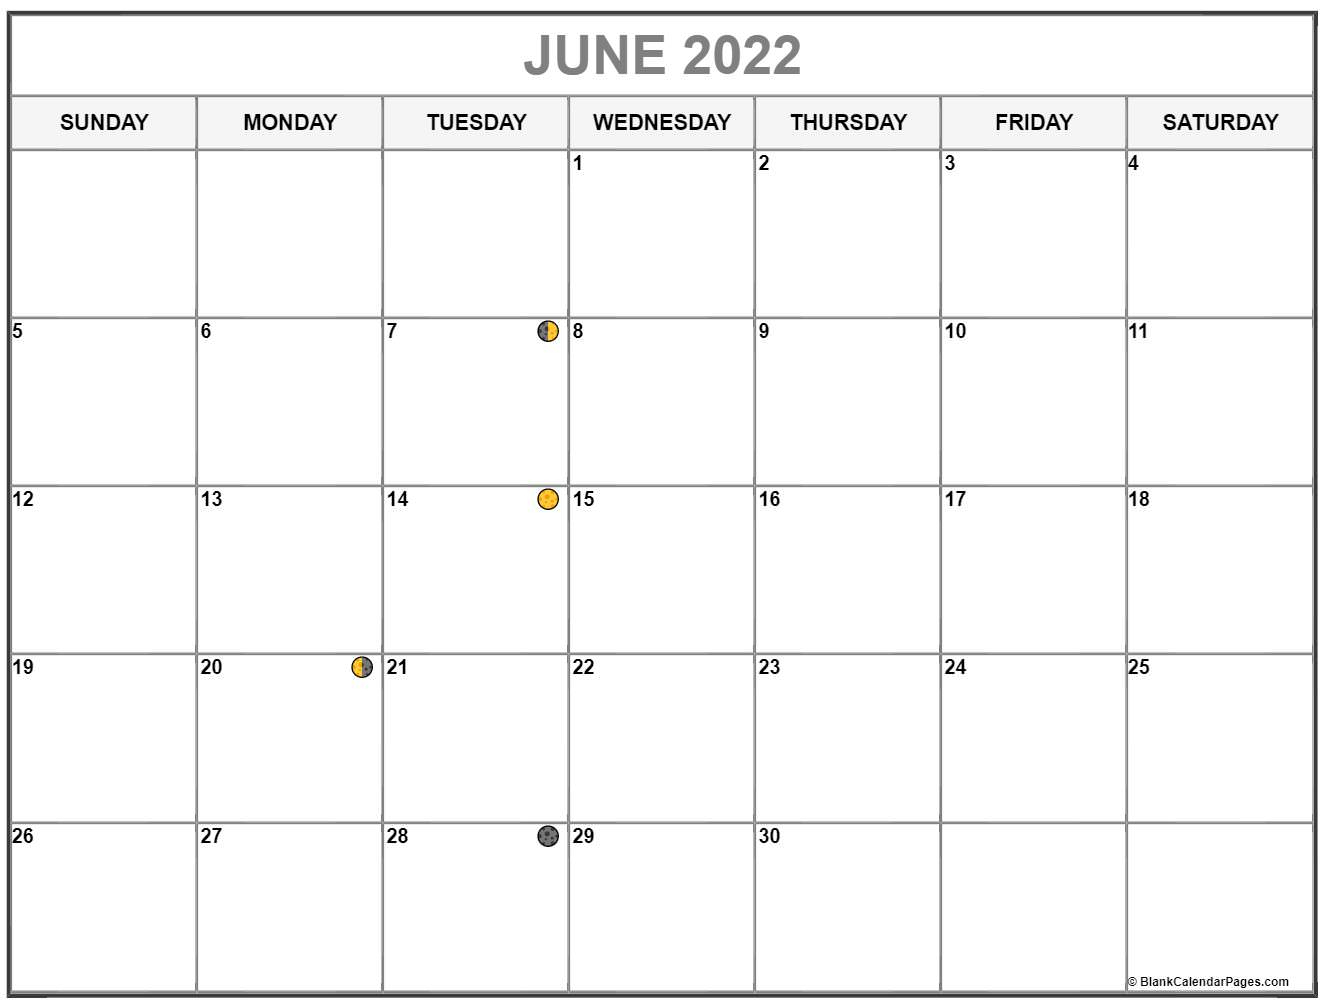 New Moon June 2022 Calendar - January Calendar 2022